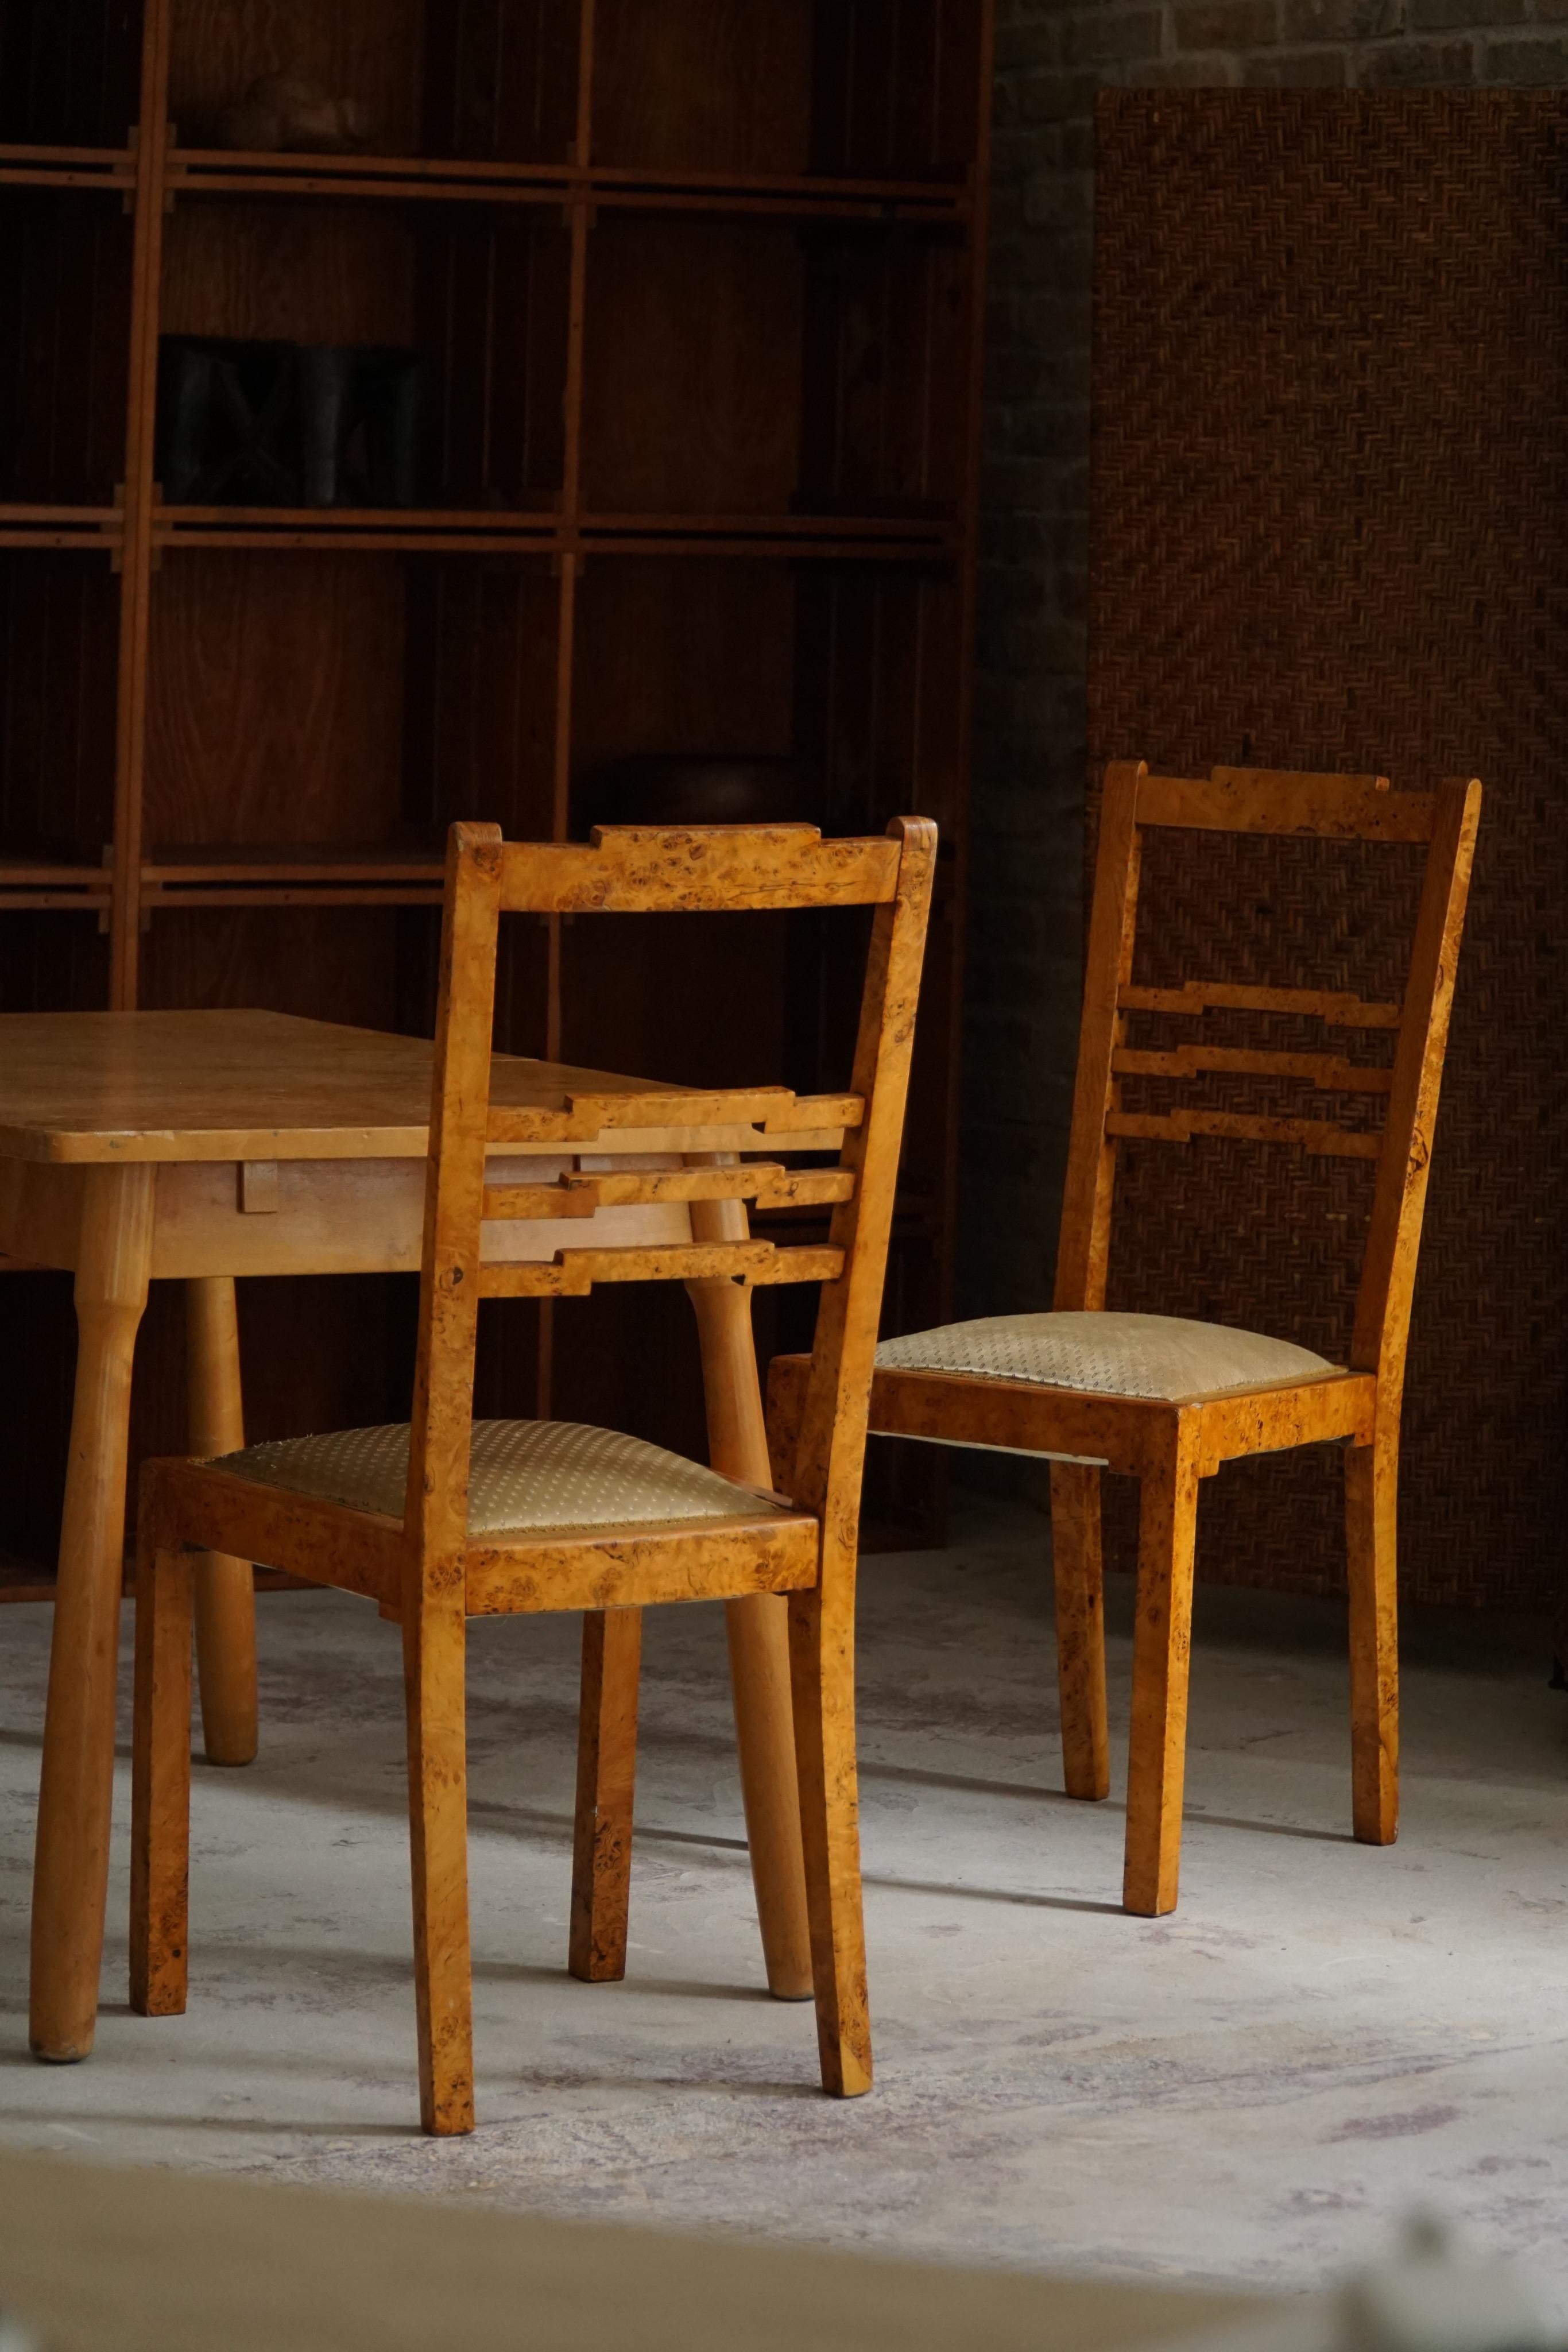 Ein Paar dekadenter, seltener Art-Déco-Esszimmerstühle aus Birkenwurzelholz, hergestellt Anfang des 20. Jahrhunderts von einem schwedischen Tischler. Etwa 1920er Jahre.
Tolle Schleierarbeit, die eine schöne Struktur in diesem dekorativen Stuhl